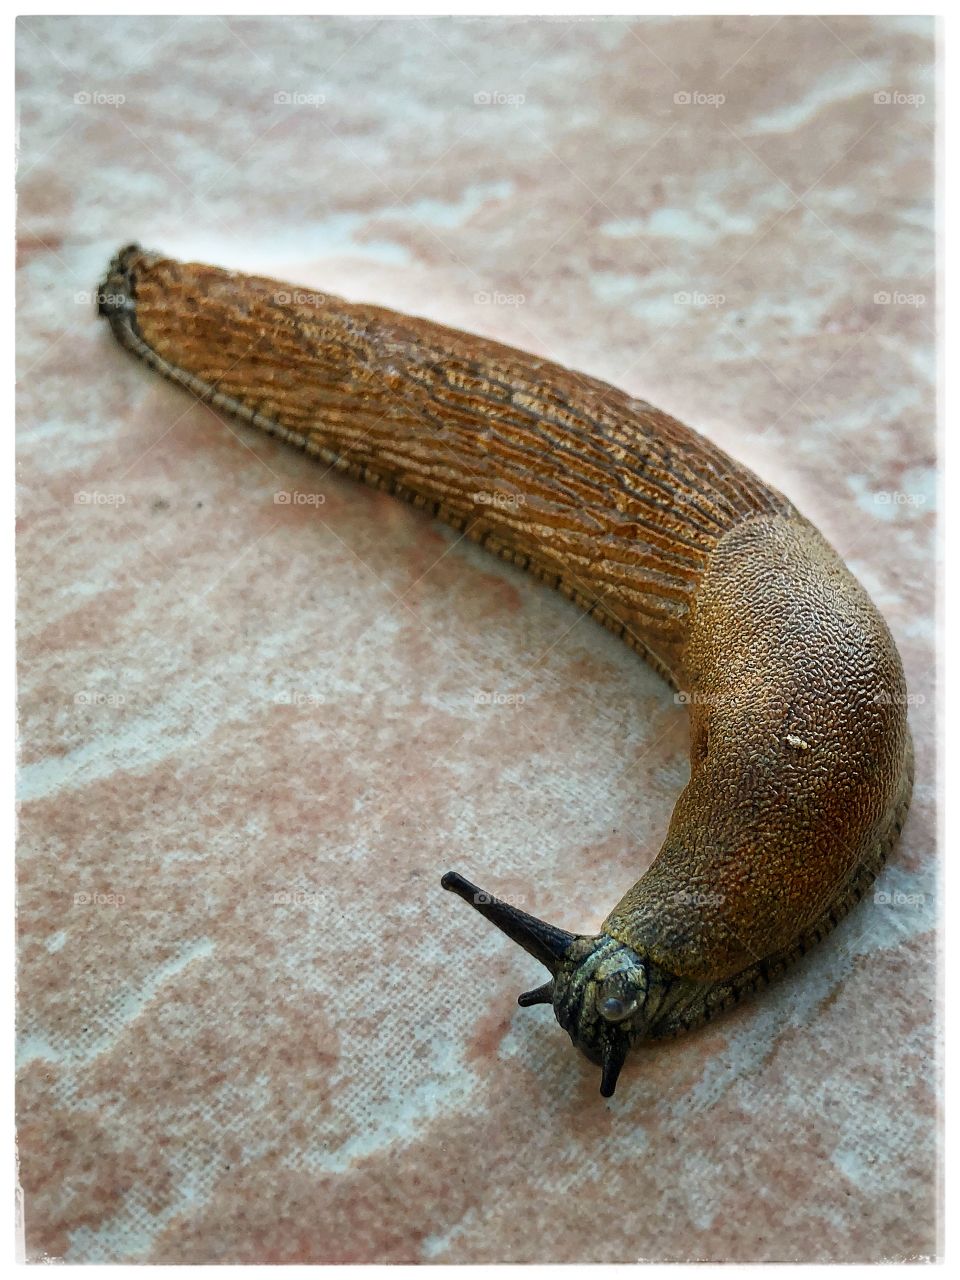 Slug 